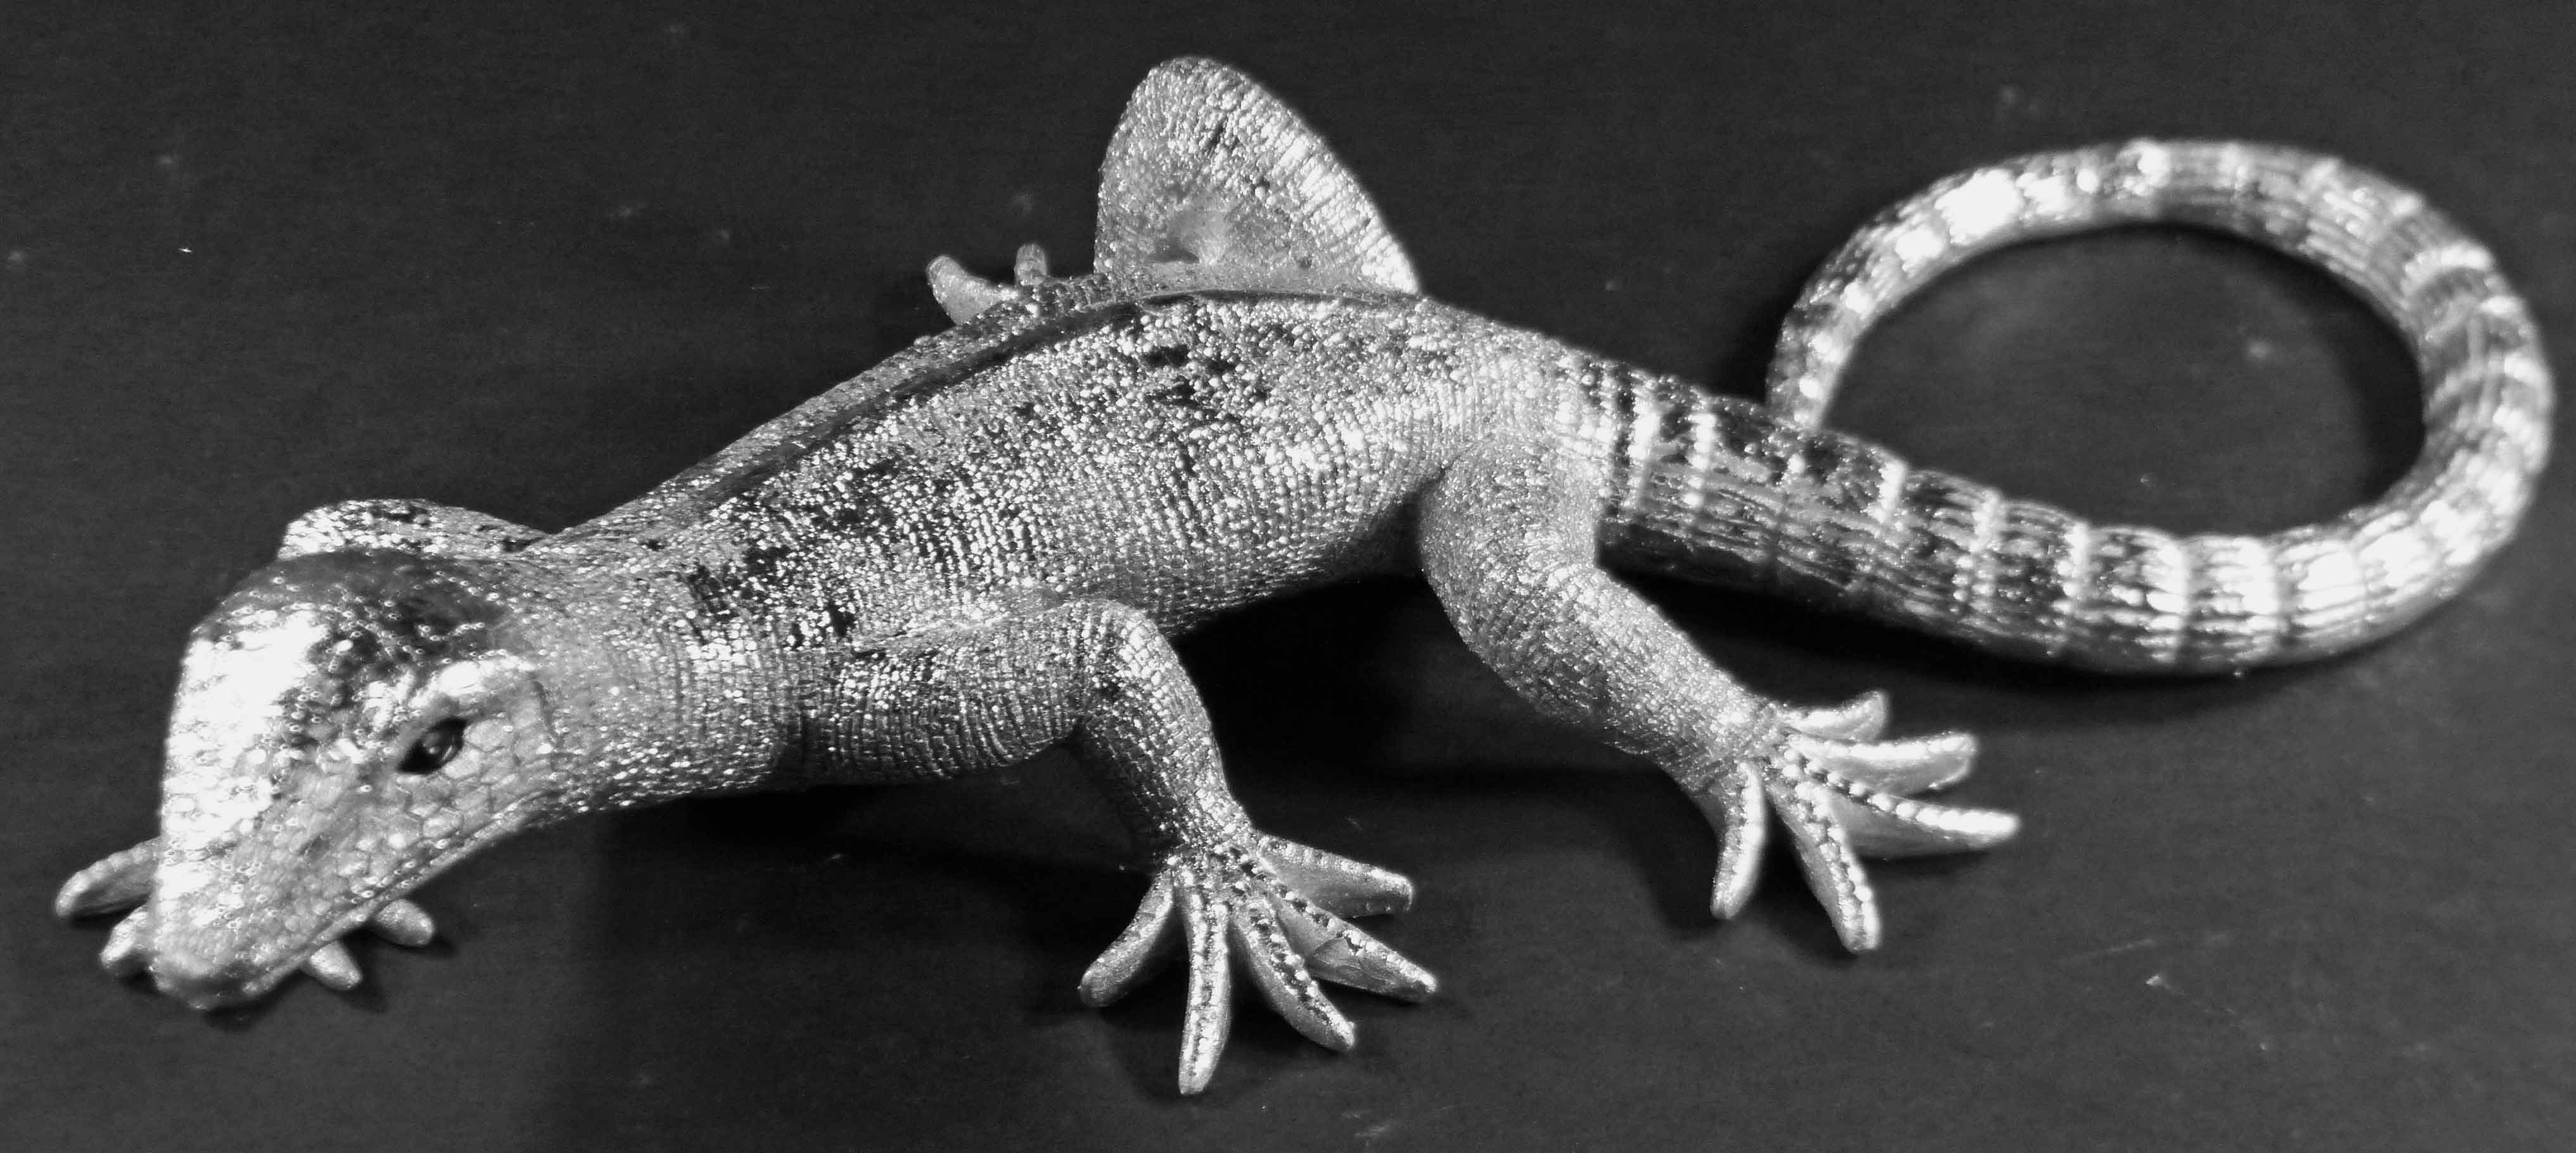 Eidechse Polyresin 2 Echse 2tlg), 100% klein/groß St., GlasArt Dekofigur Set, Geckos silber Tierfigur (2er Set 2er